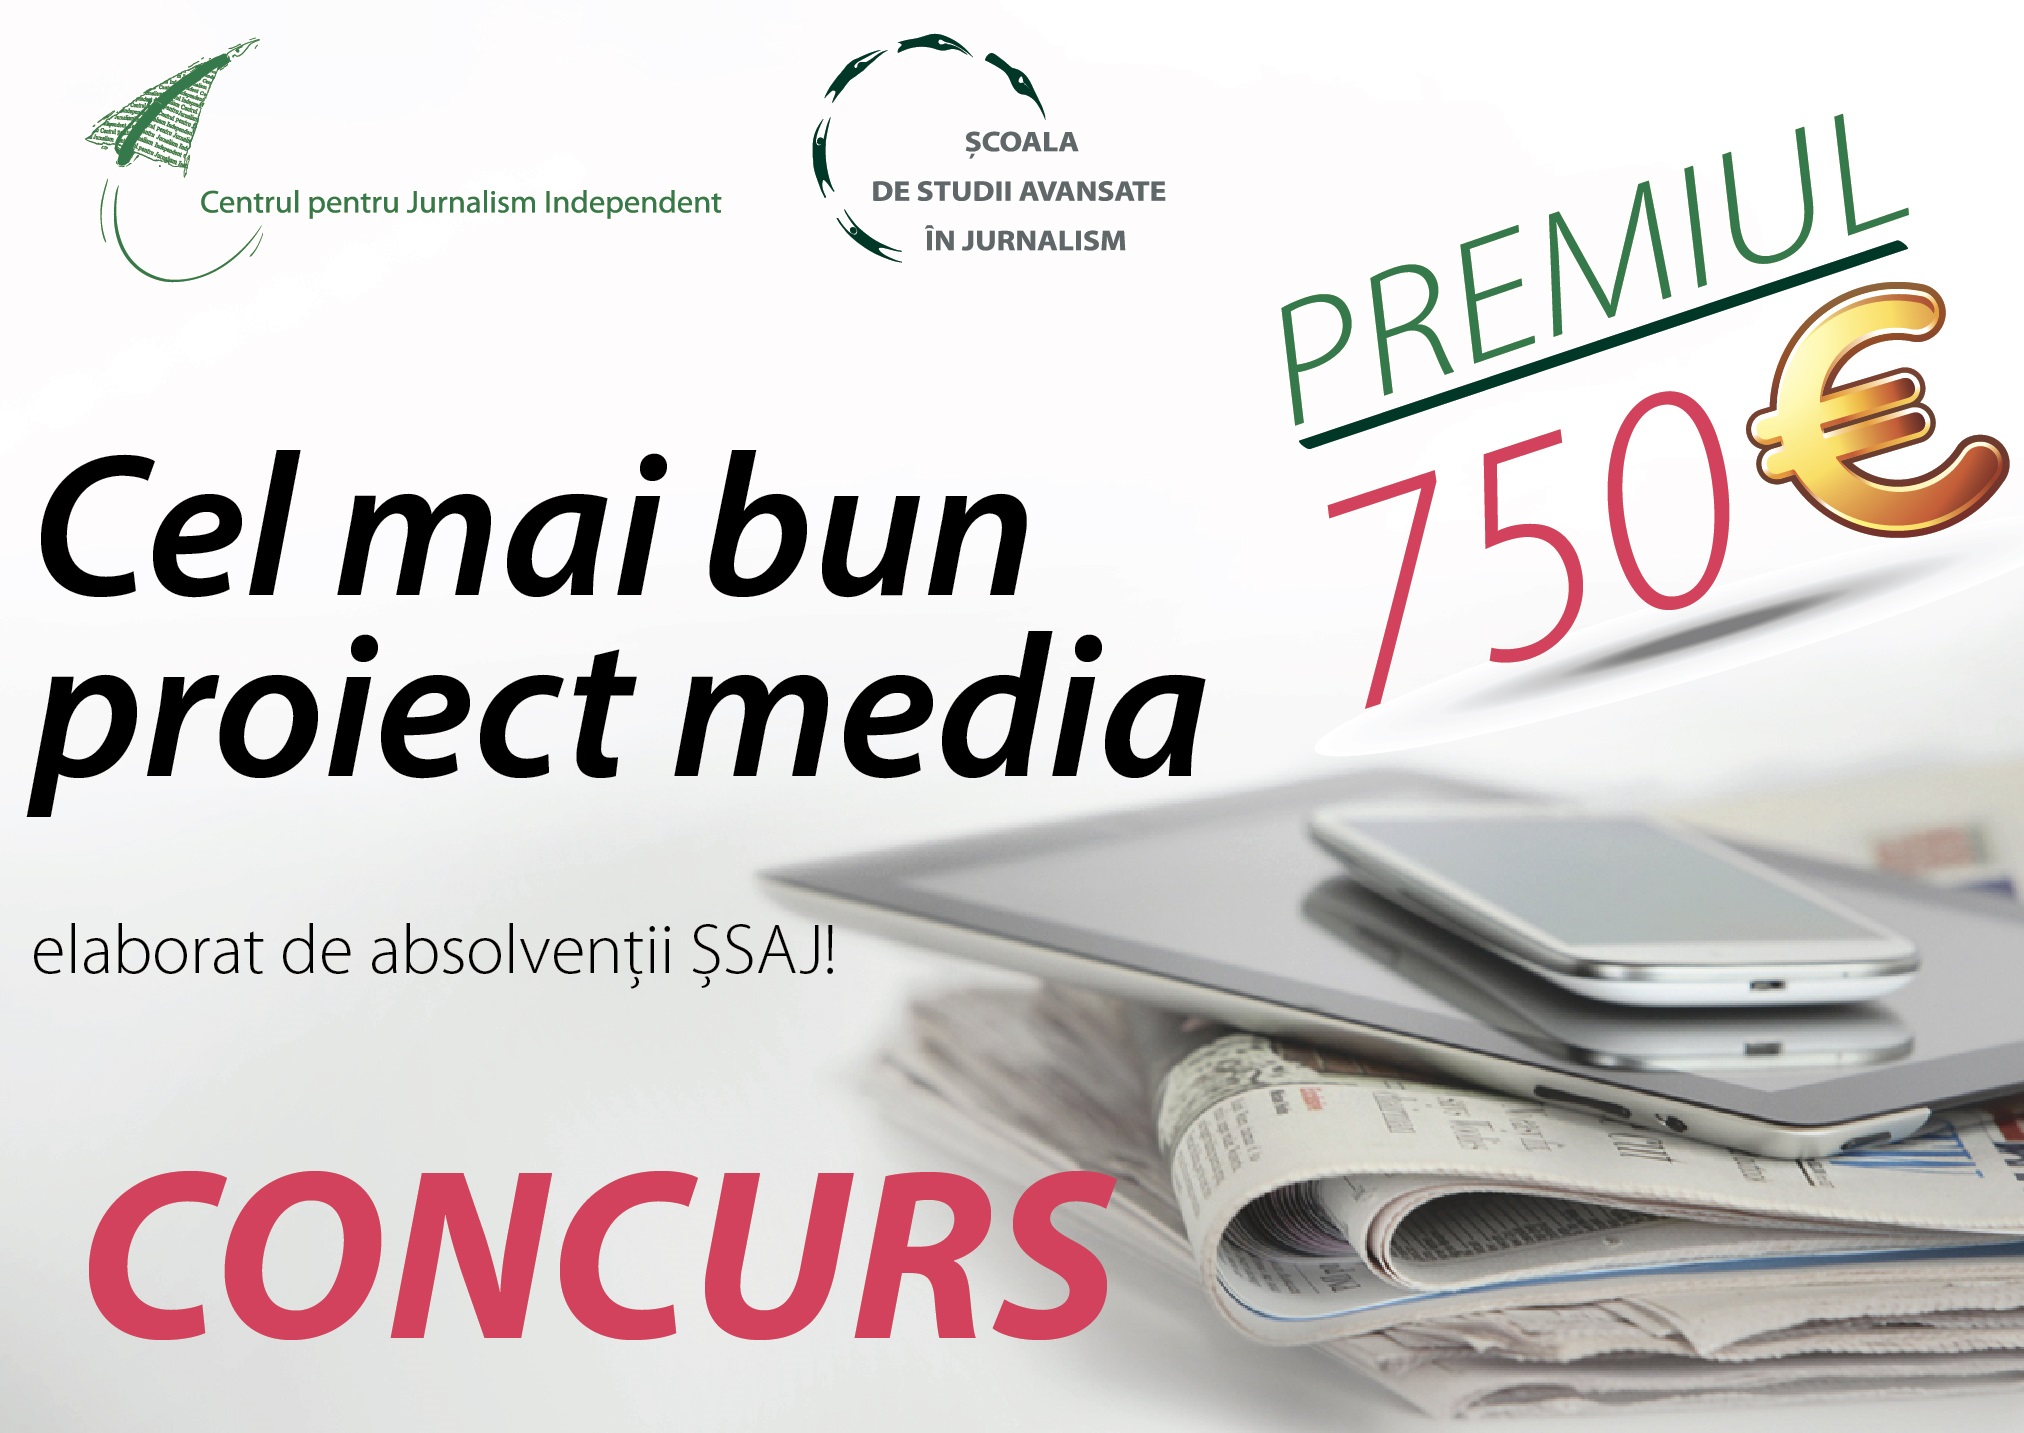 CONCURS: cel mai bun proiect media elaborat de absolvenții ȘSAJ!